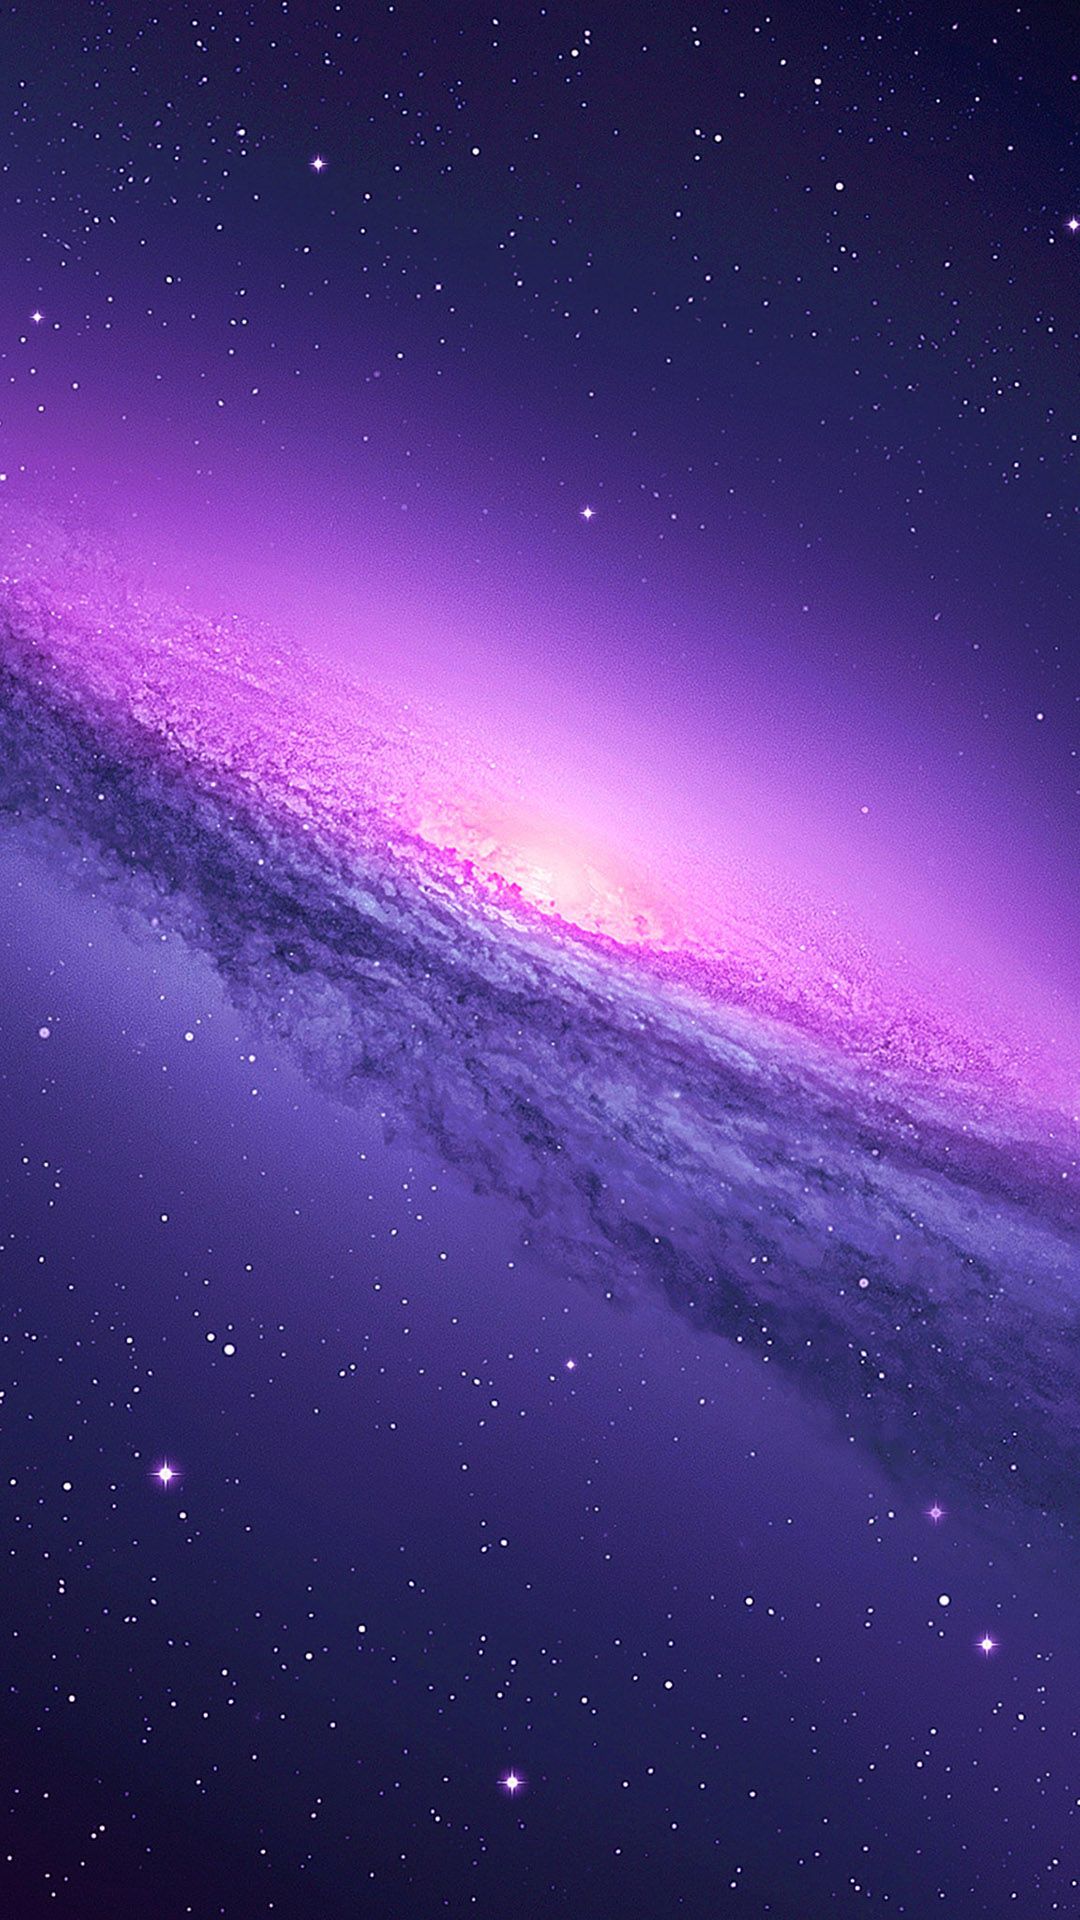 Pastel Galaxy Image Kecbio